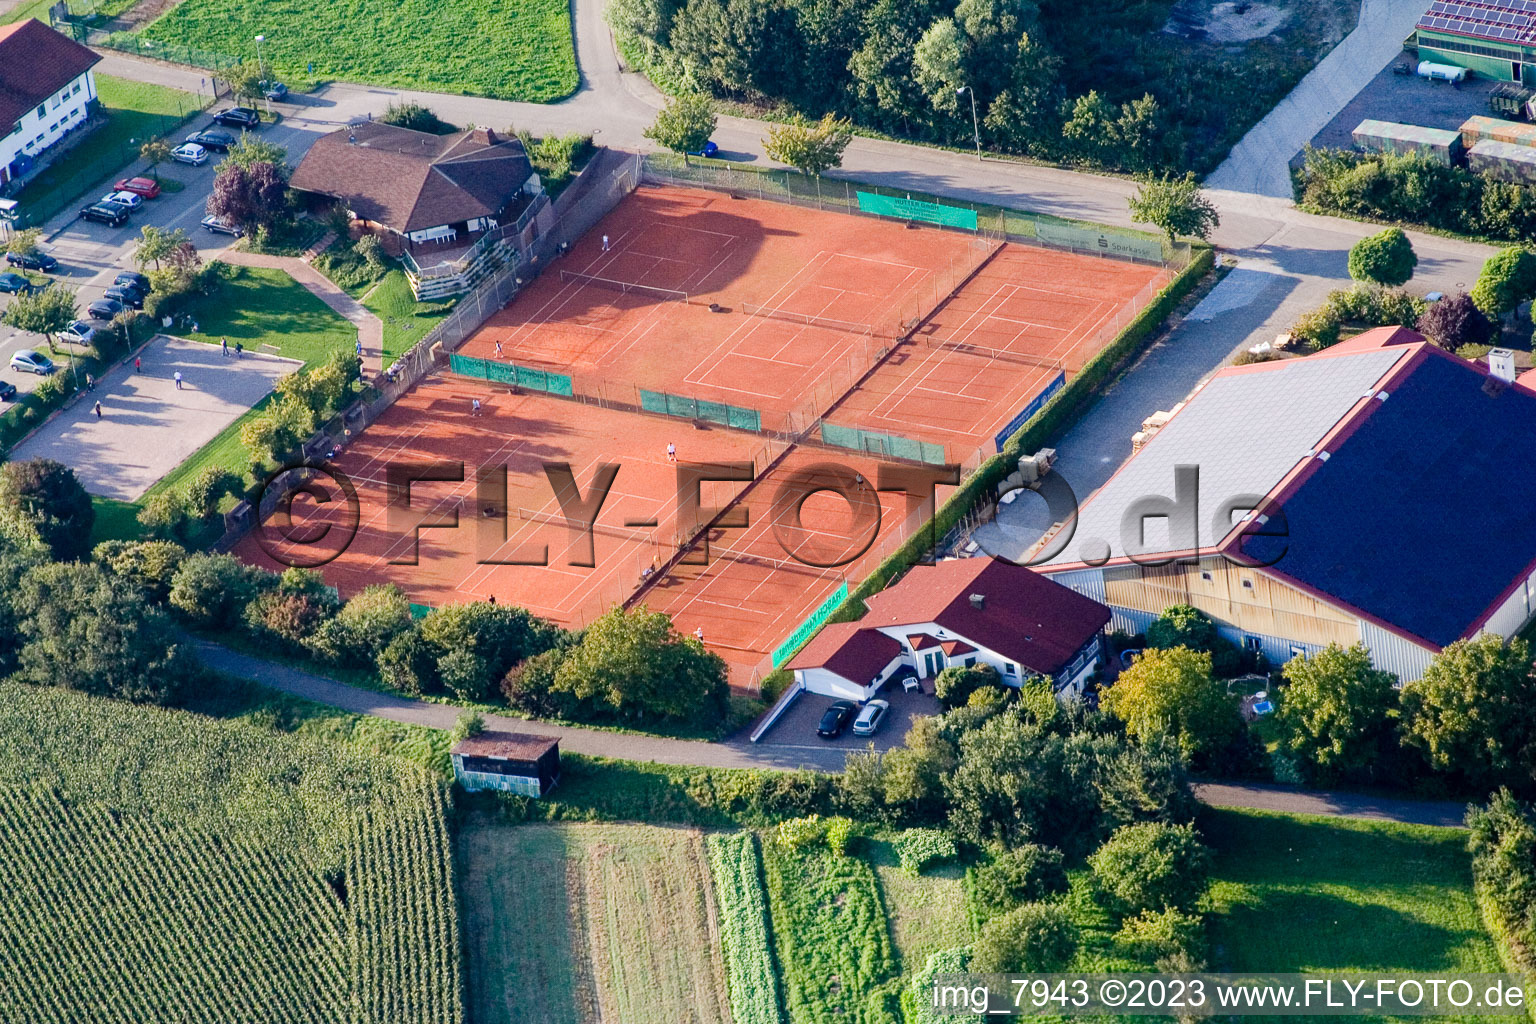 Vue aérienne de Club de tennis à Neuburg dans le département Rhénanie-Palatinat, Allemagne